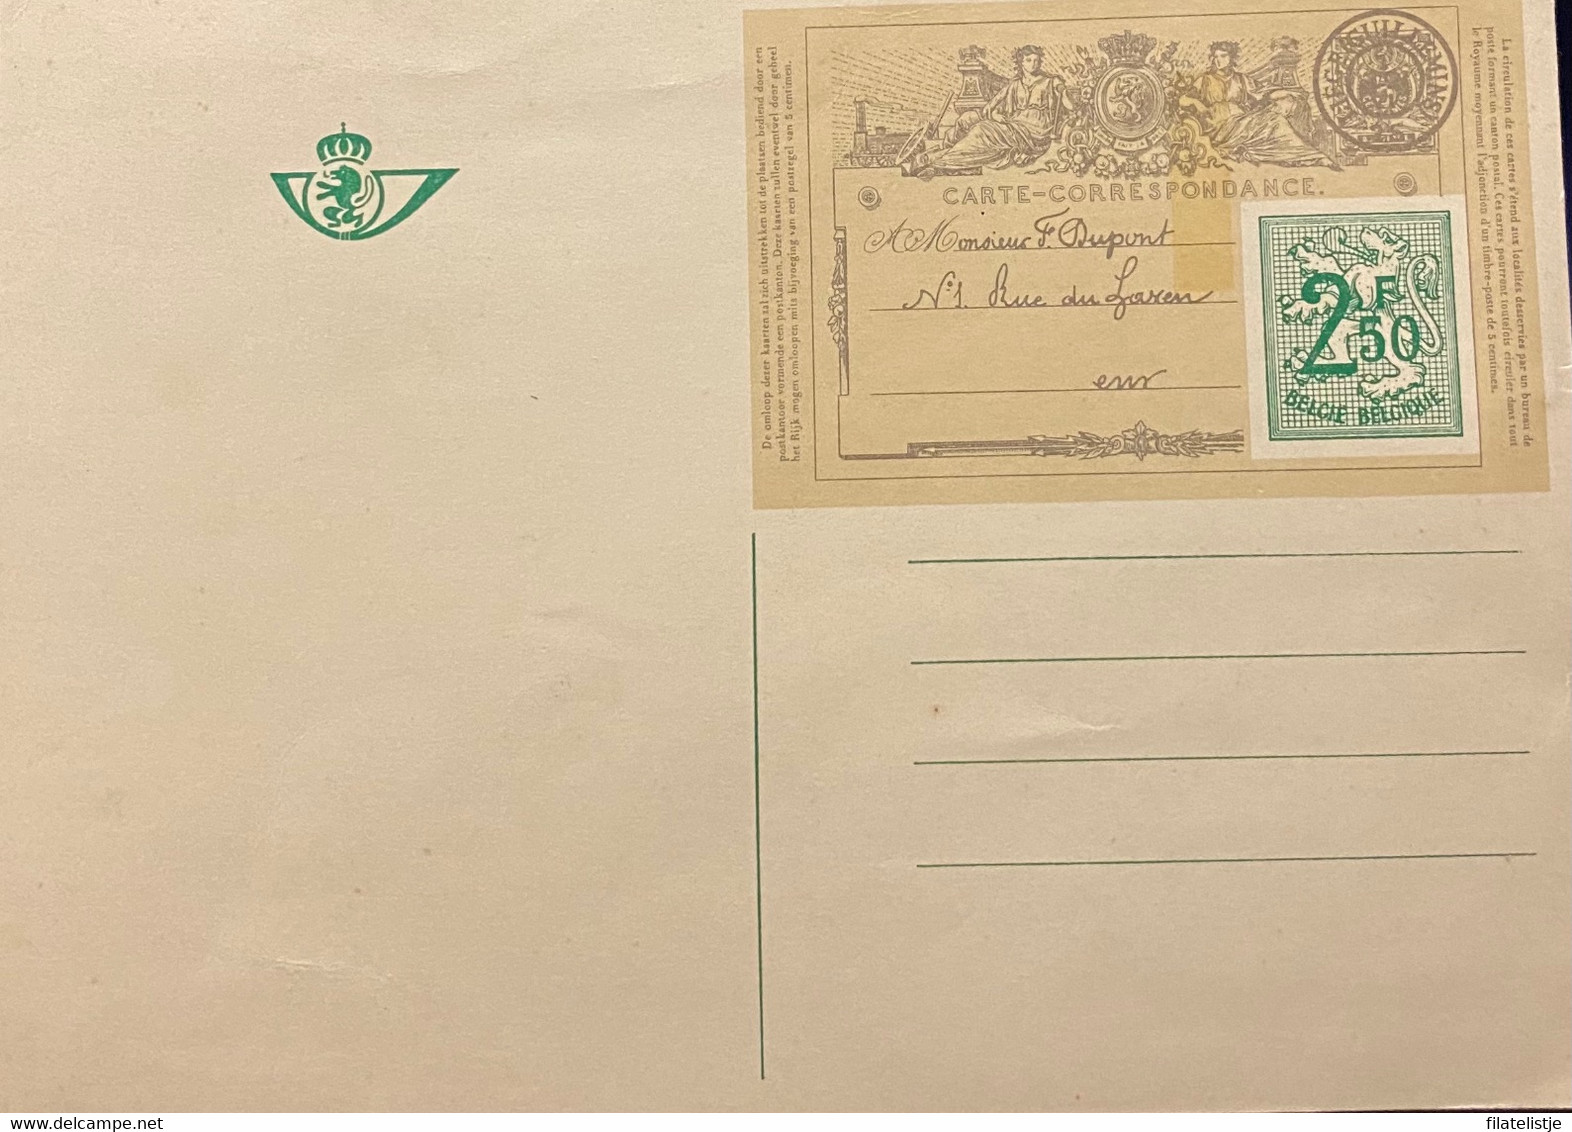 Briefkaart 1971 Carte Correspondence - Cartes Postales 1951-..